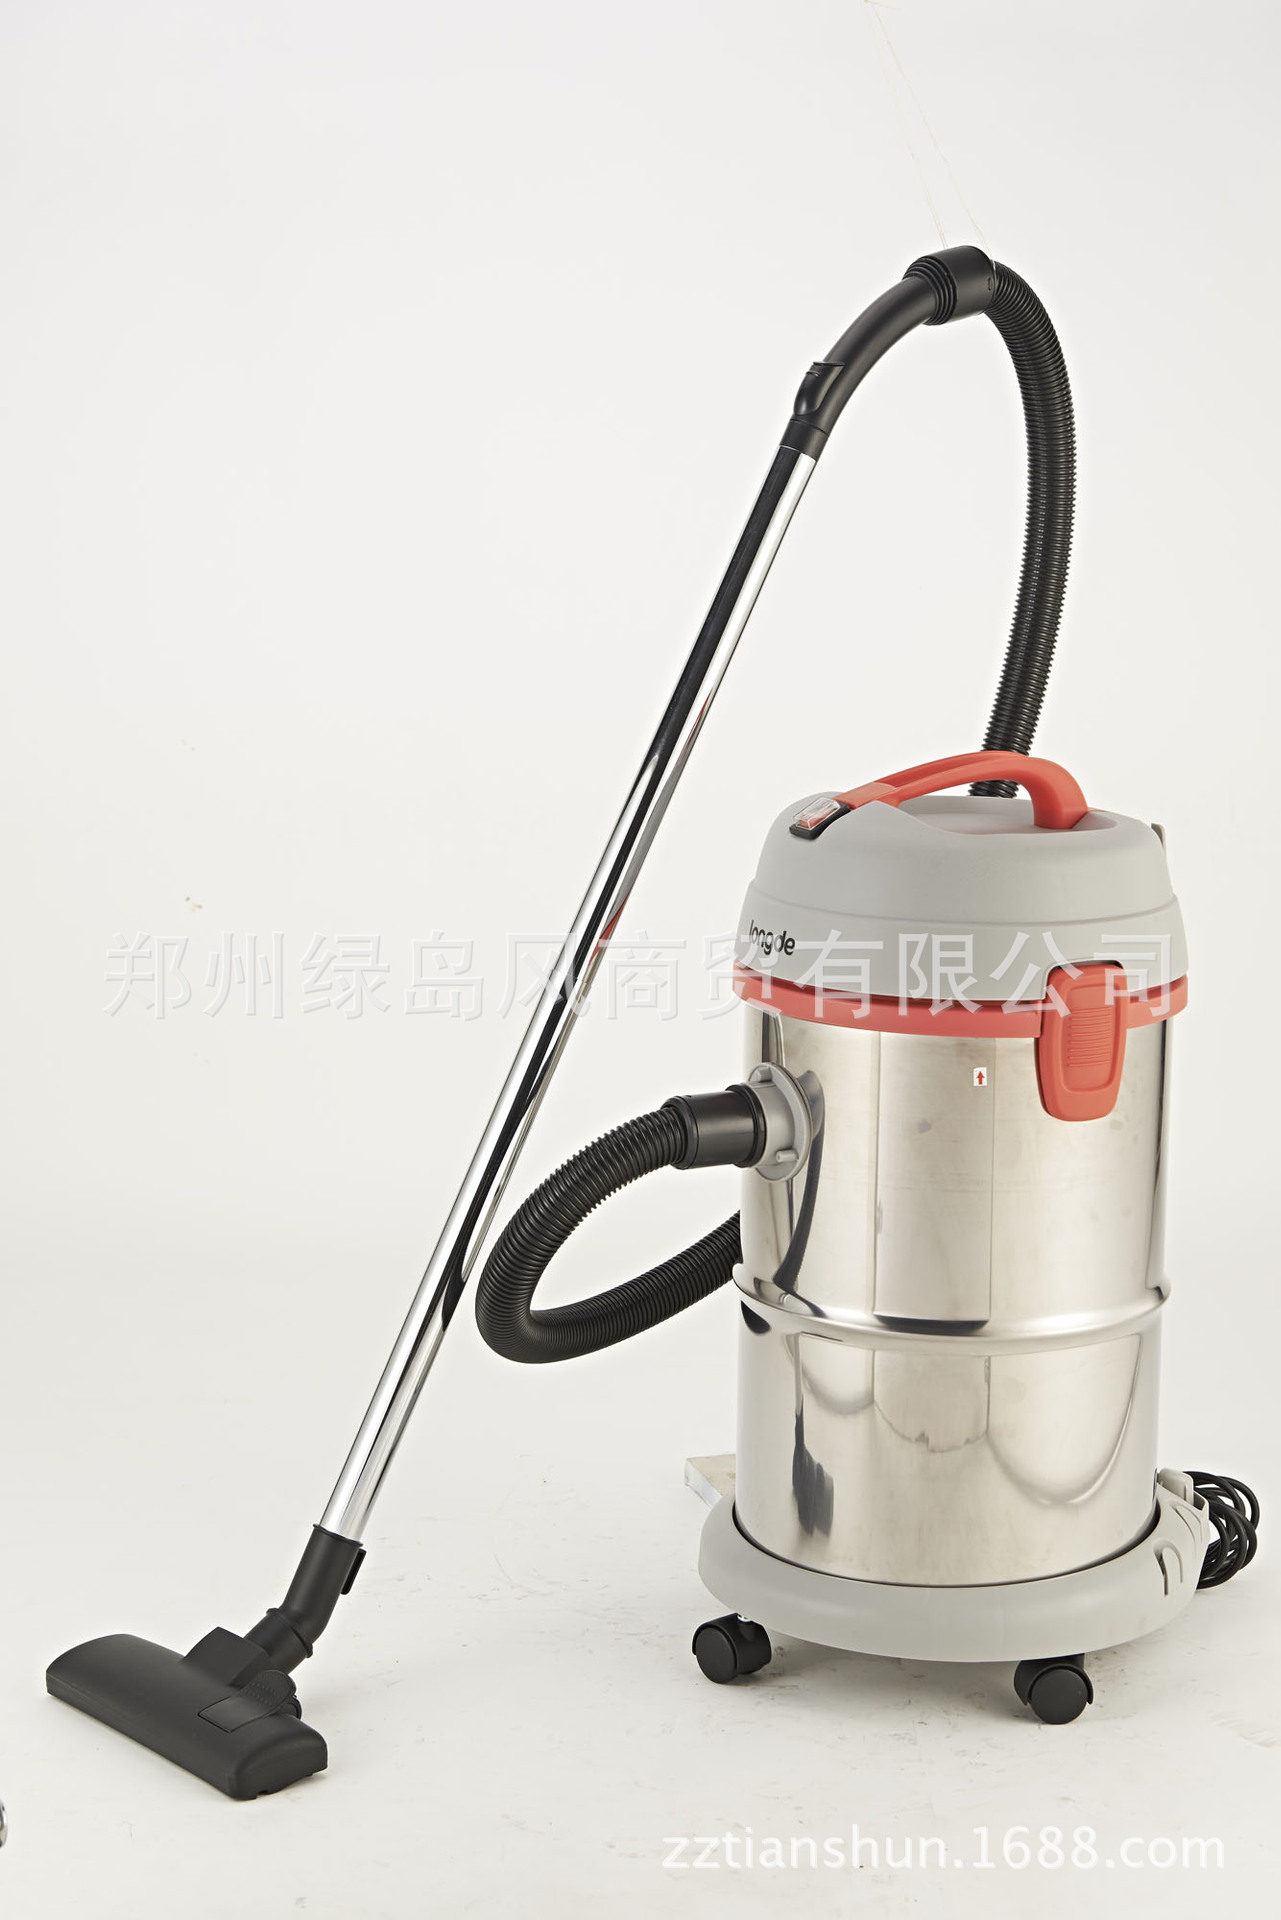 龙的工业吸尘器 NK-601 干湿两用 商用吸尘器 清洁办公专用吸尘器